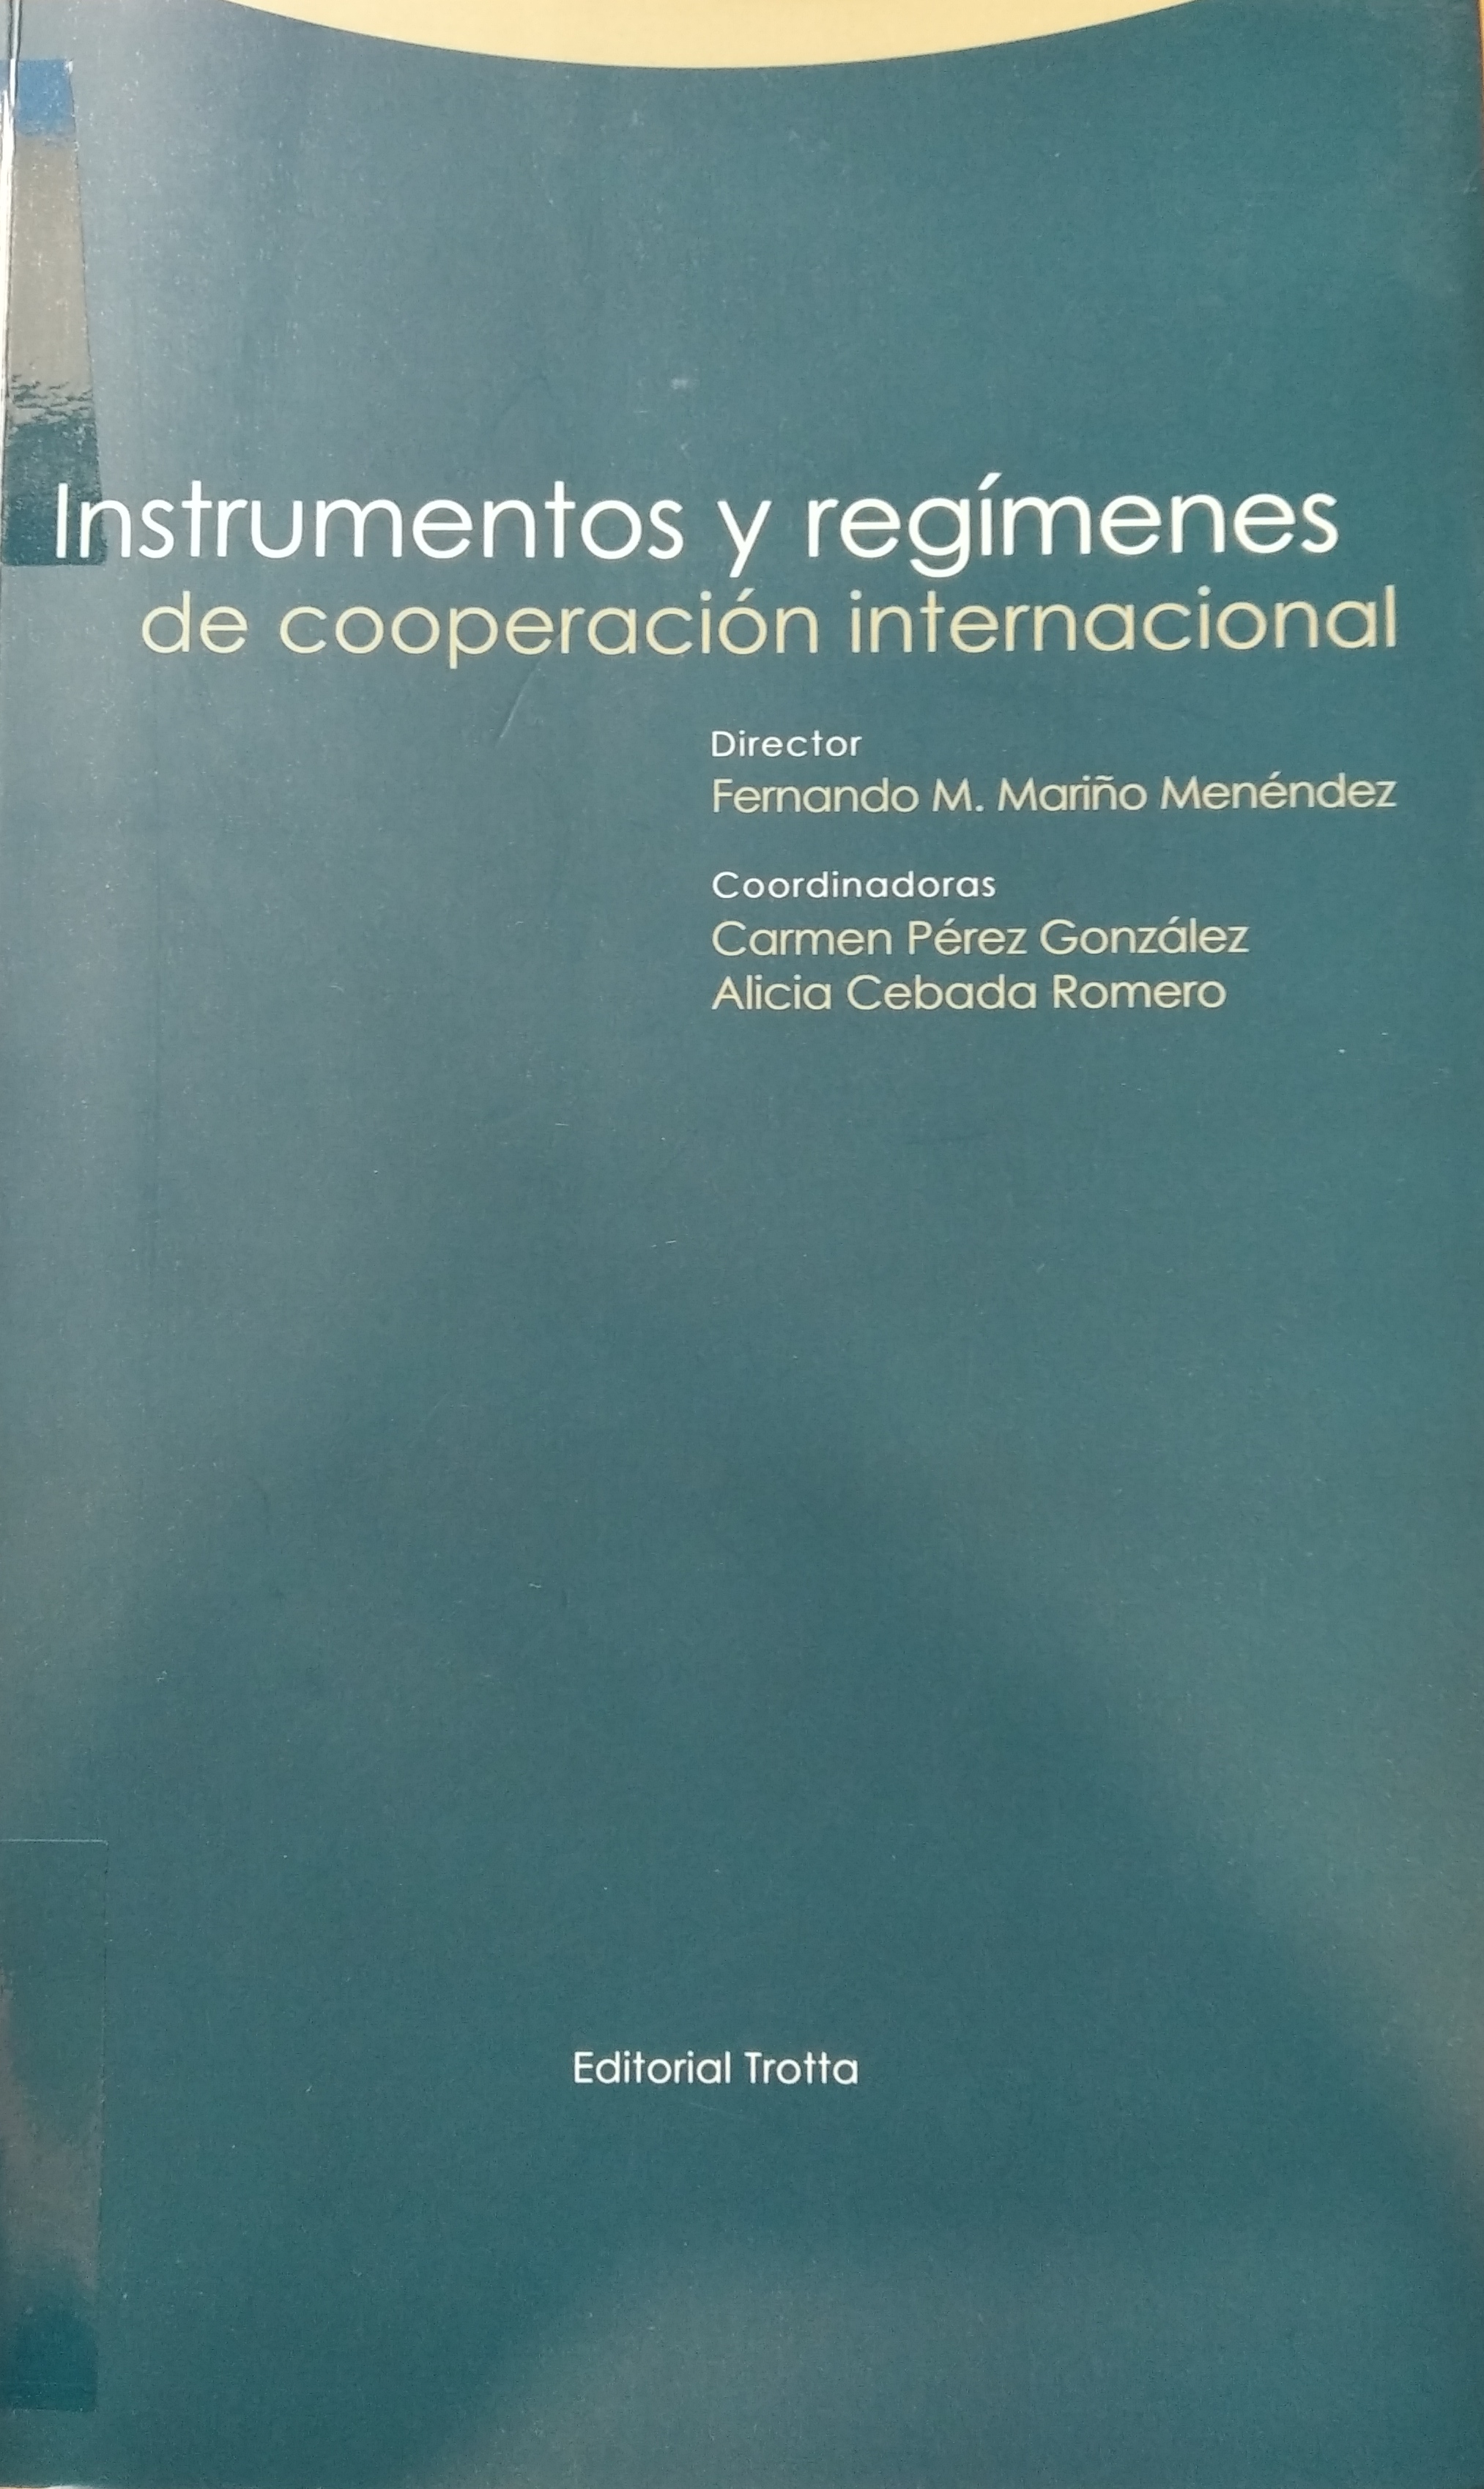 Imagen de portada del libro Instrumentos y regímenes de cooperación internacional